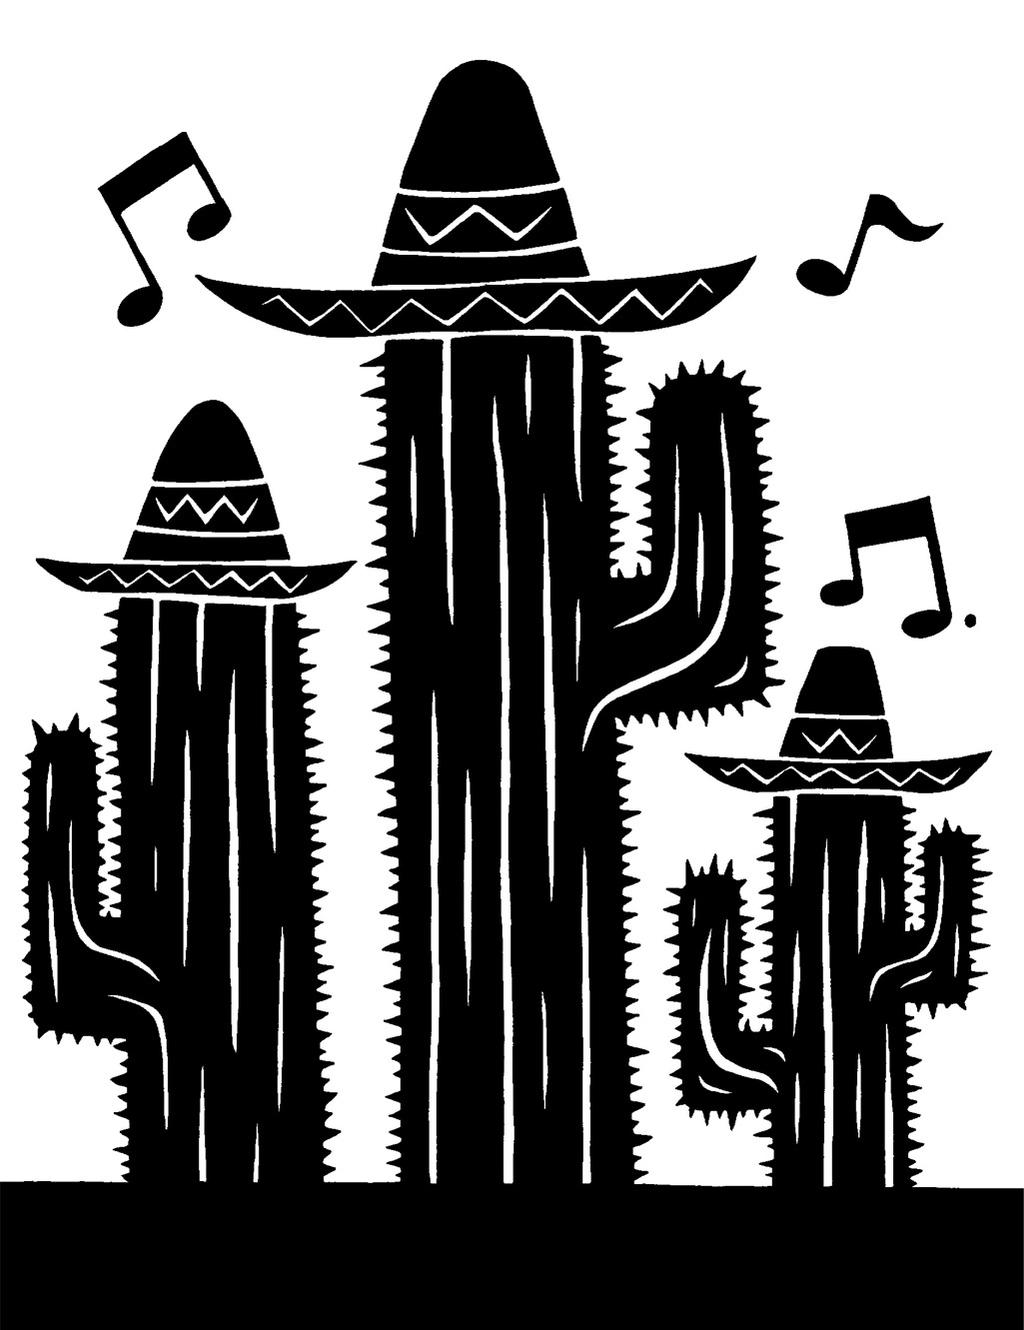 SCP-065-J – Cactus Cantantes Amigos